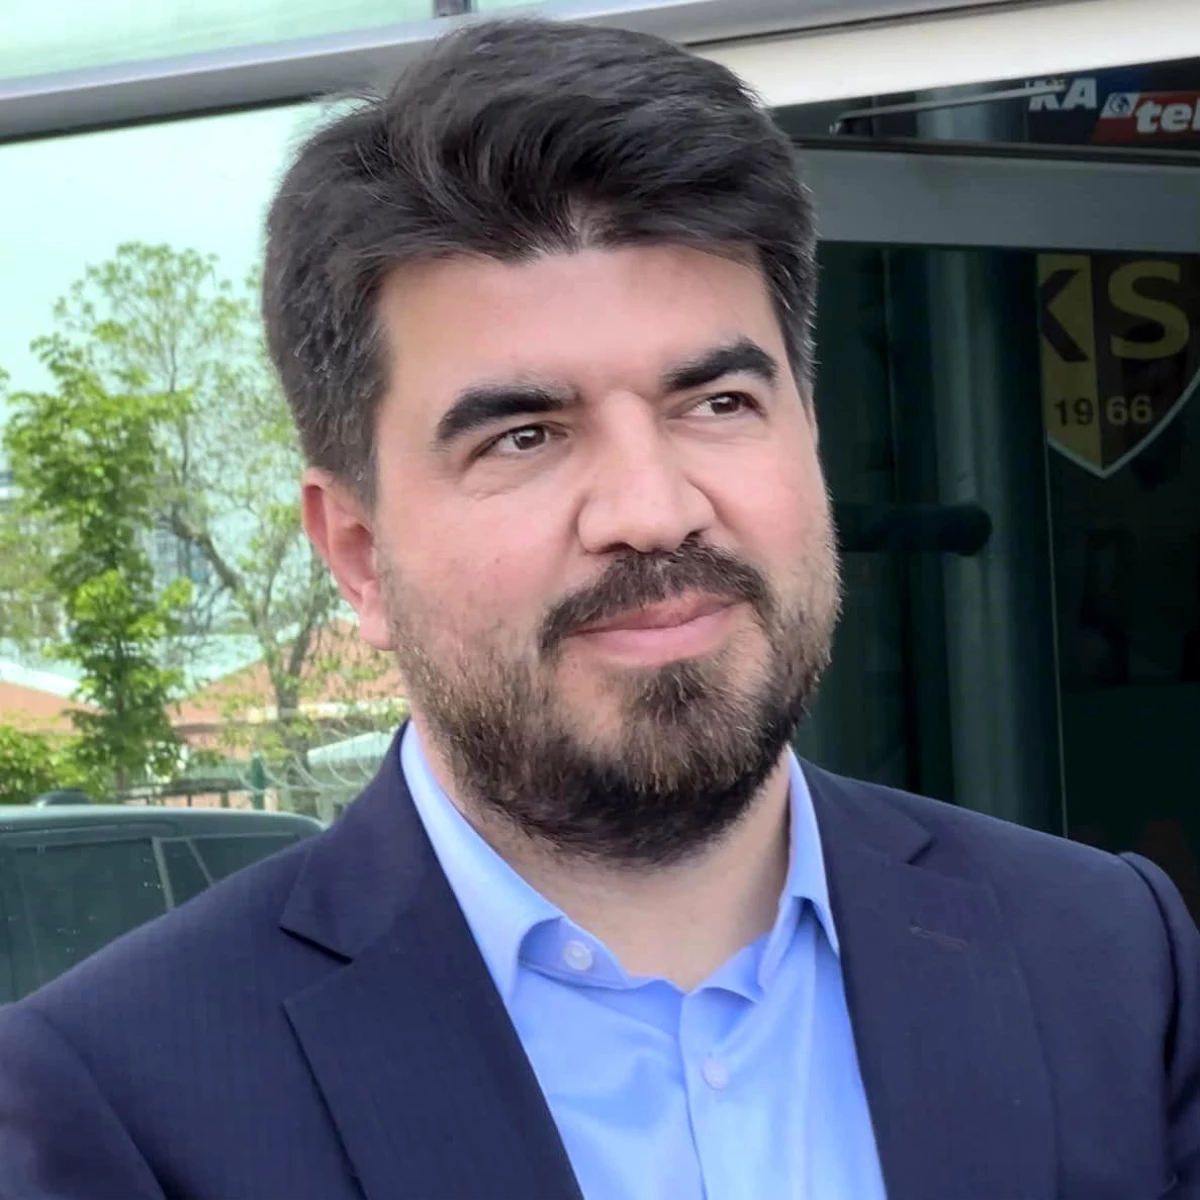 Kayserispor Basın Sözcüsü: Sakatlıktan dönen oyuncularımıza ve yeni transferlere zaman tanımalıyız